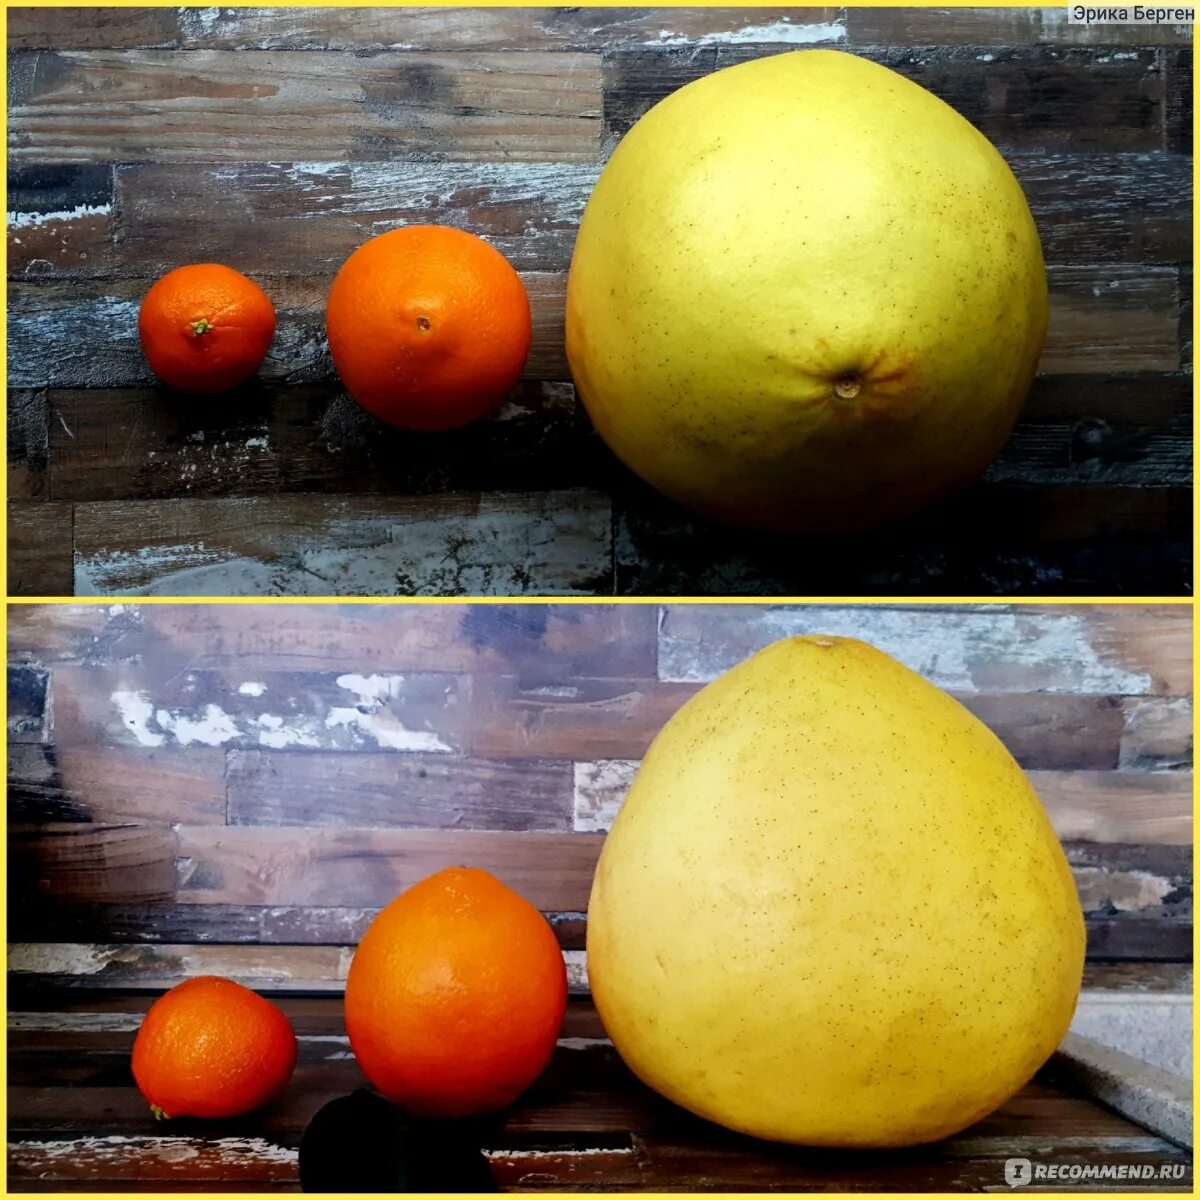 Помело фрукт спелый. Помело фрукт размер. Помело размер. Спелое помело. Как выбрать спелый помело в магазине